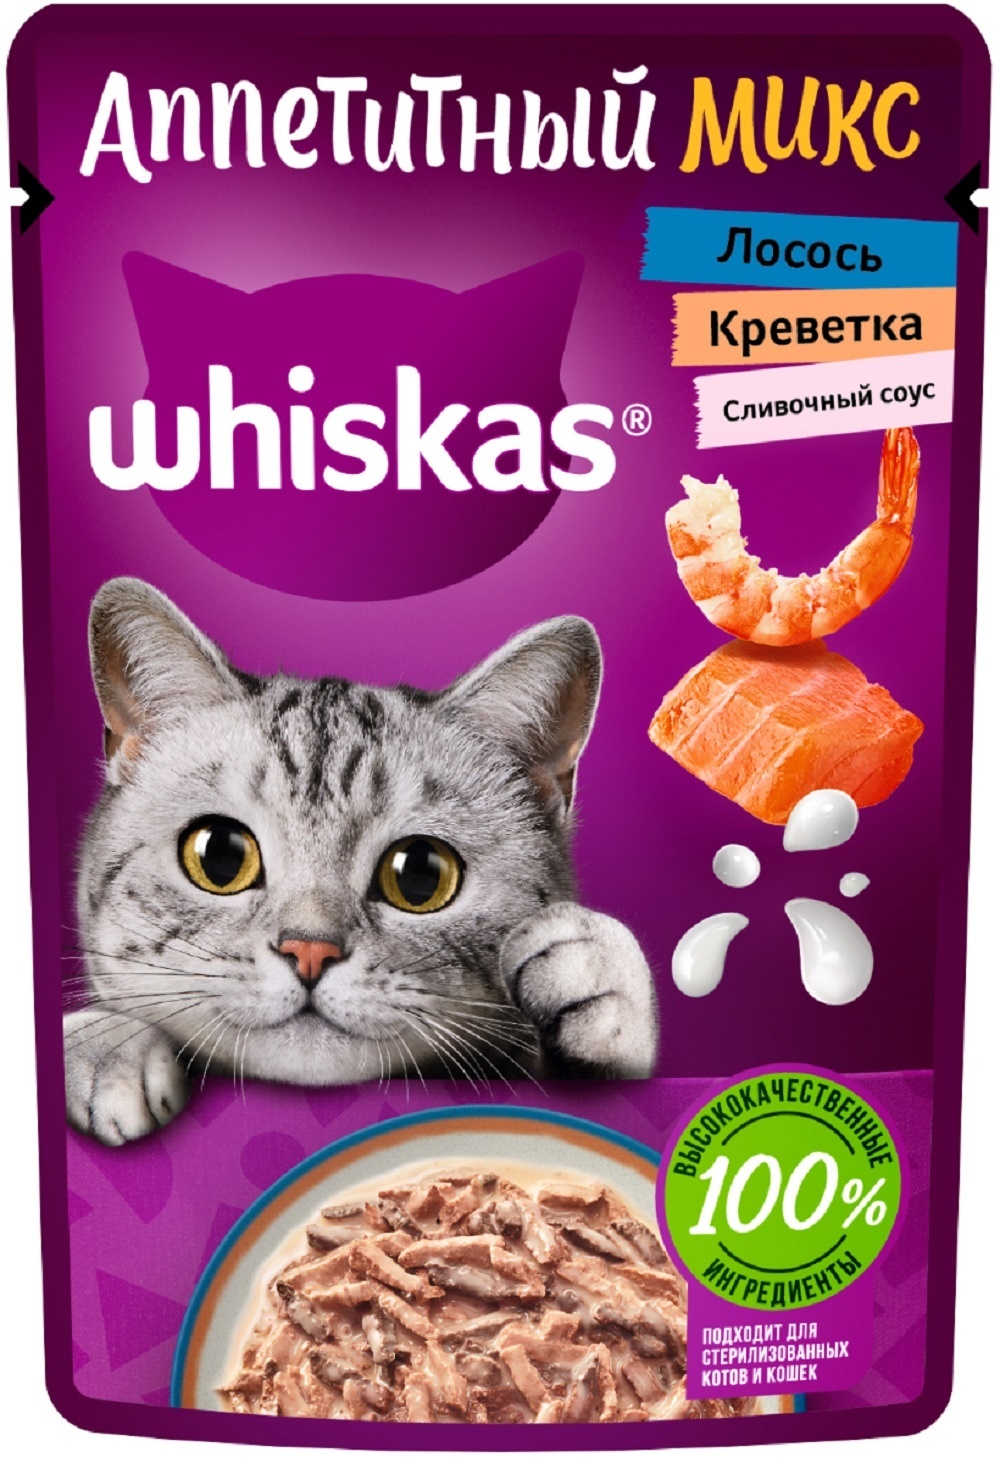 Whiskas влажный корм «Аппетитный микс» для кошек, лосось и креветки в сливочном соусе (75 г) Whiskas влажный корм «Аппетитный микс» для кошек, лосось и креветки в сливочном соусе (75 г) - фото 1